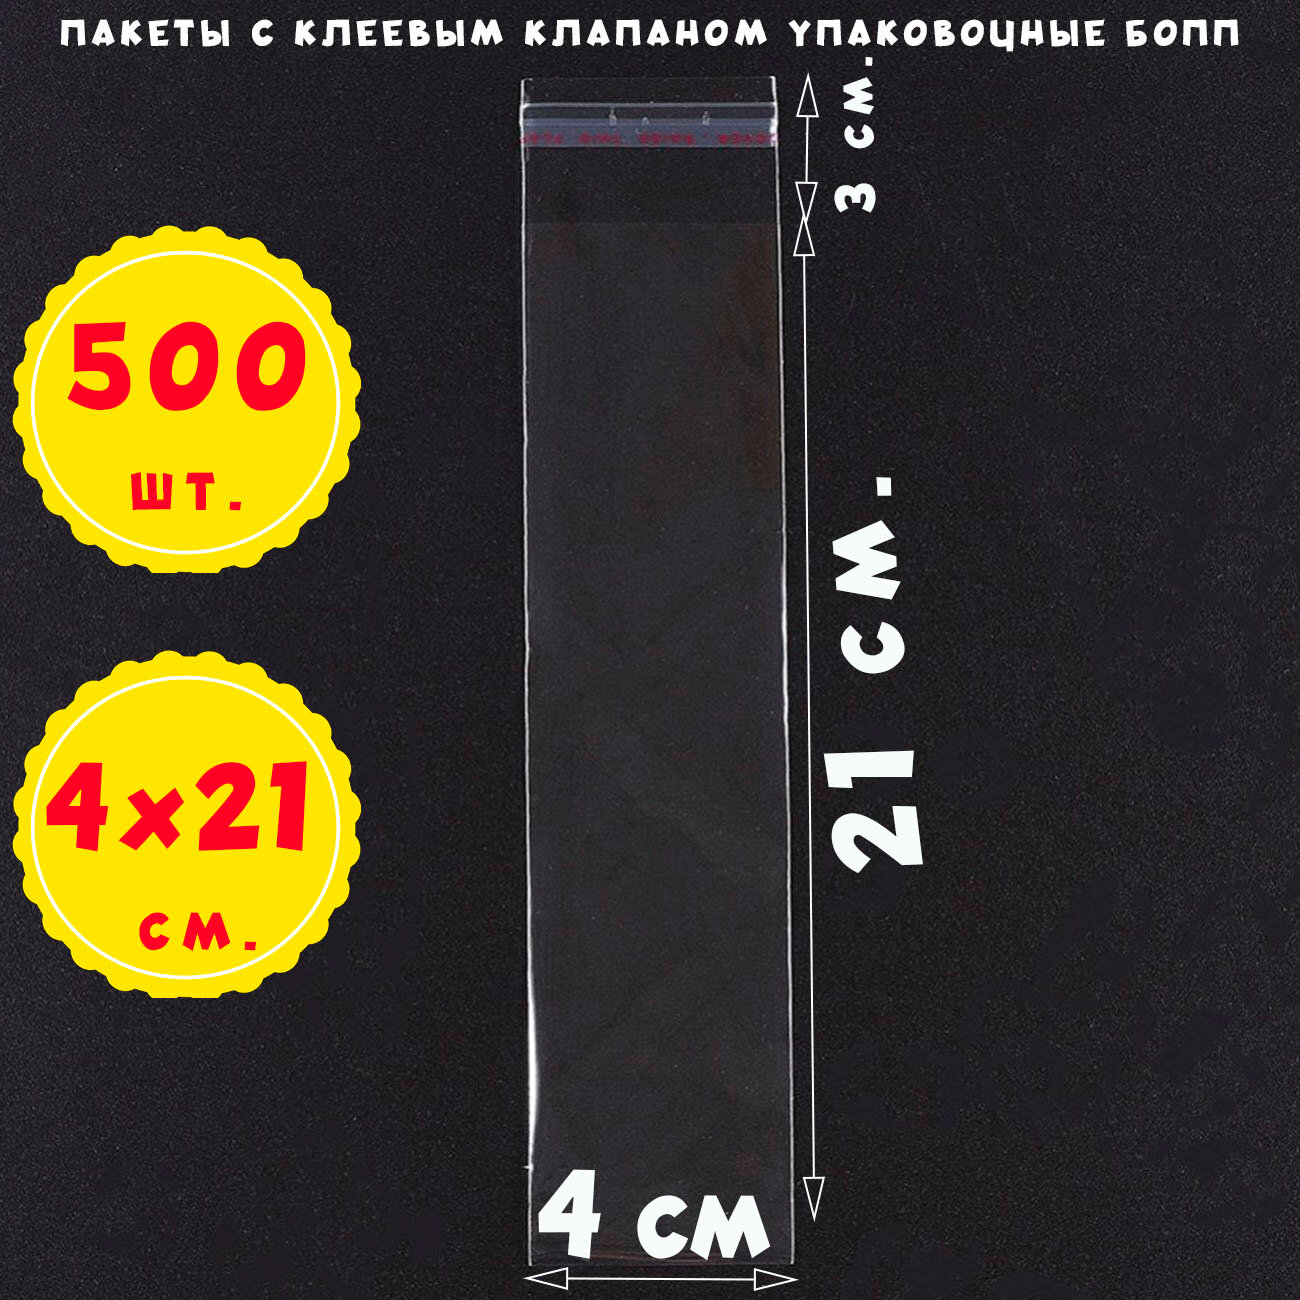 500 пакетов 4х21+3 см прозрачных с клеевым клапаном для упаковки из пленки бопп